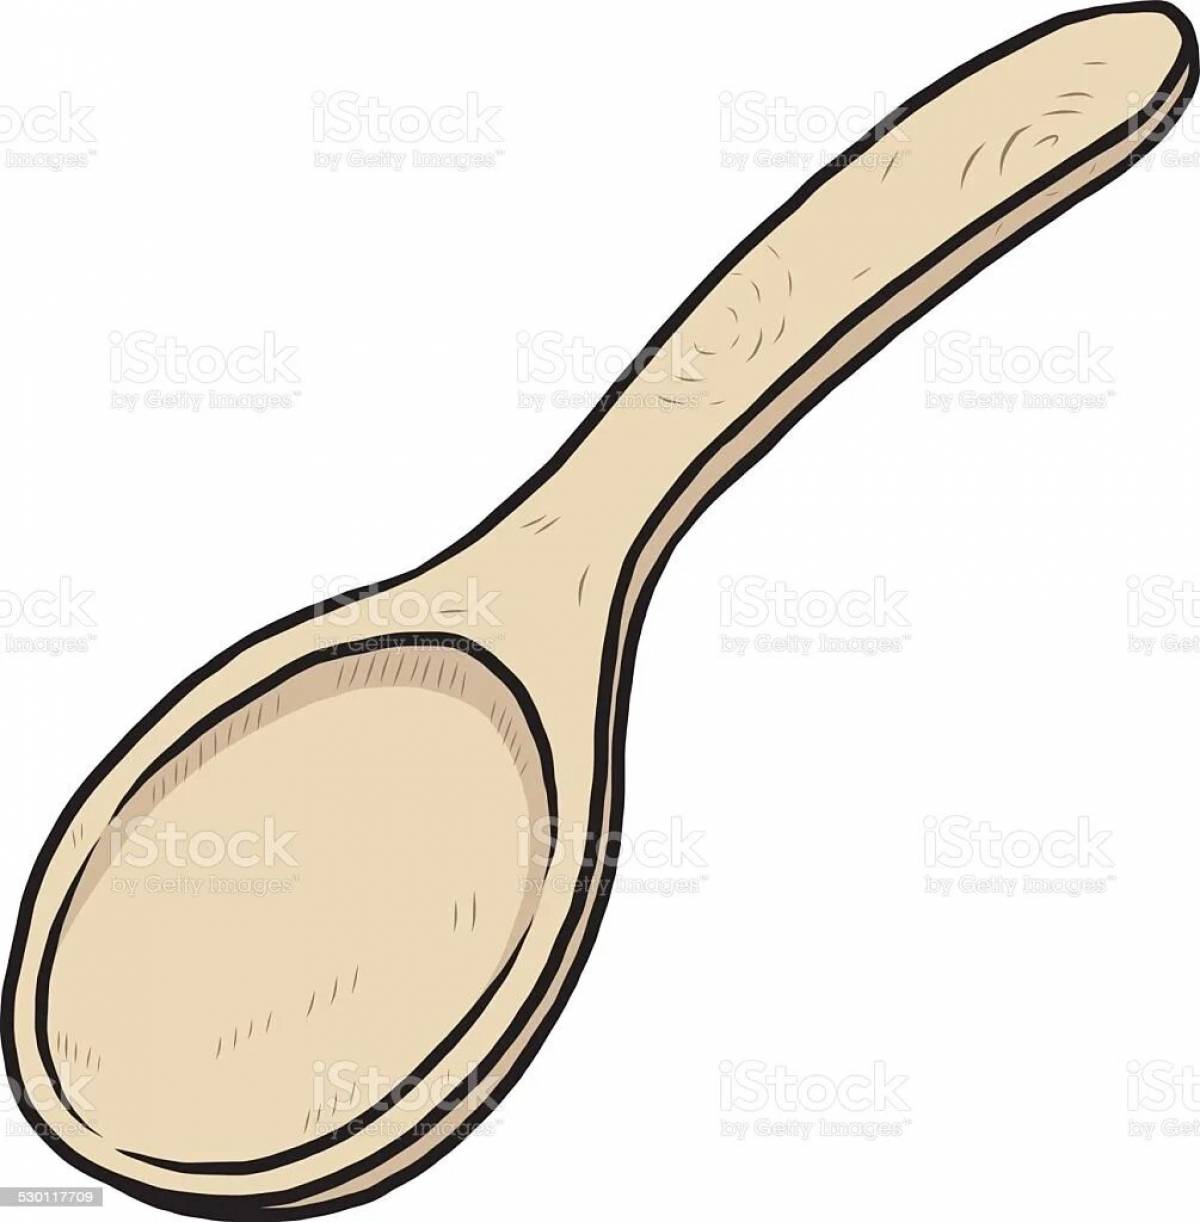 Children's wooden spoon #18